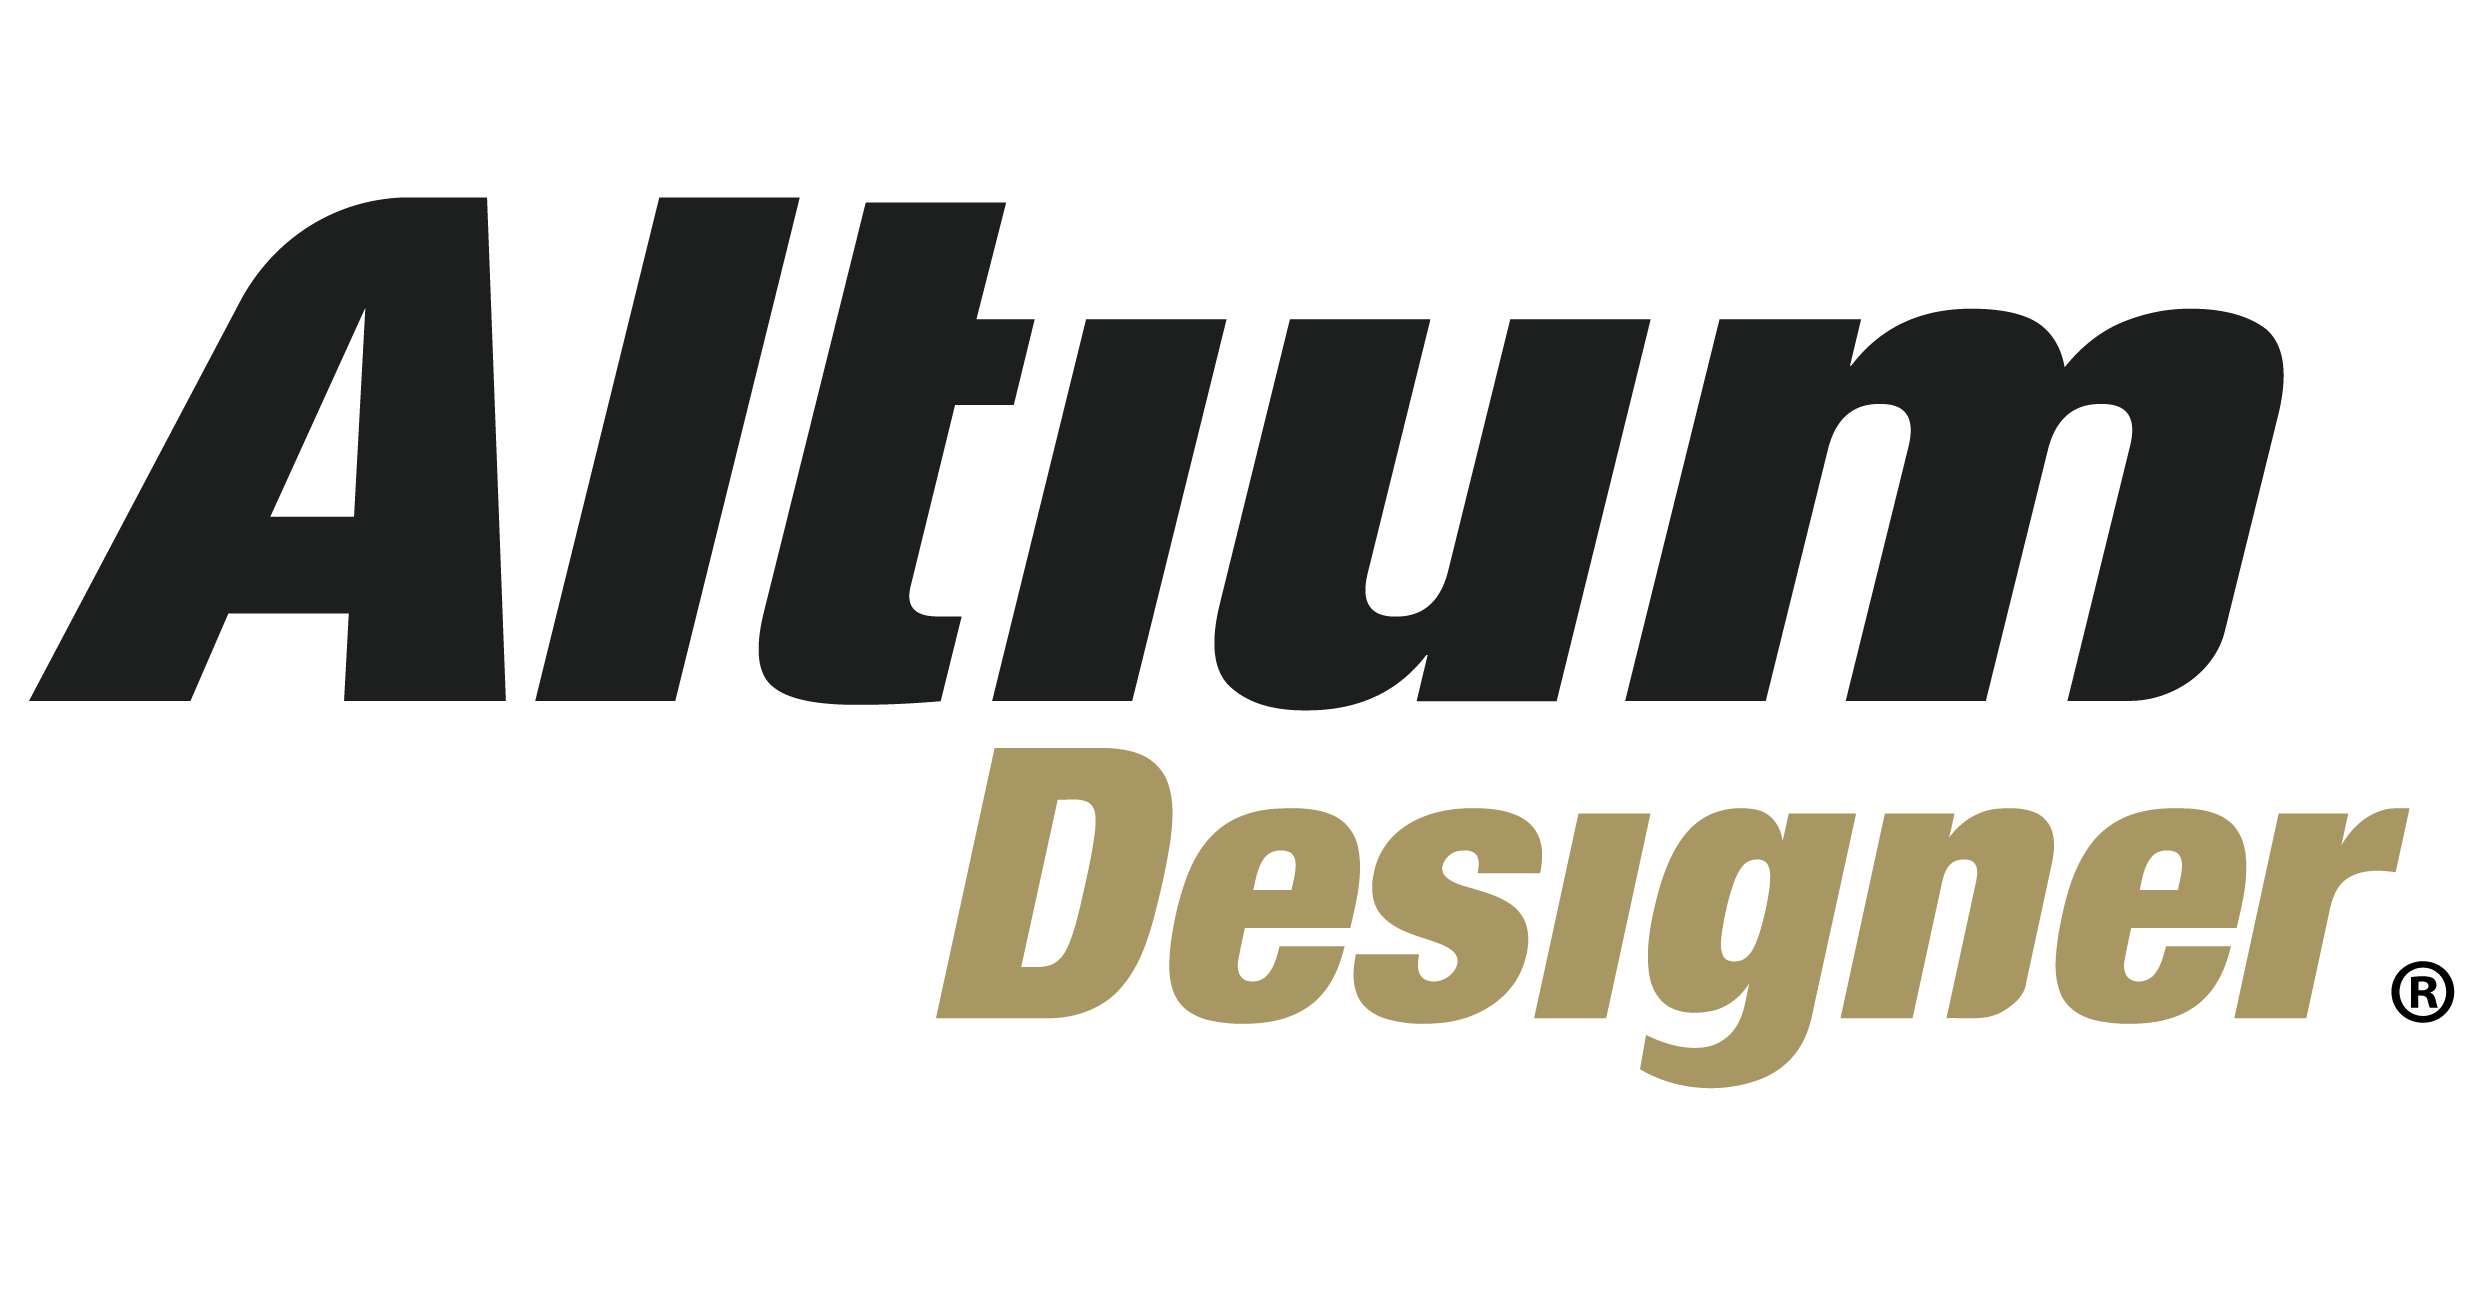 Altium Designer 23.8.1.32 download the last version for windows